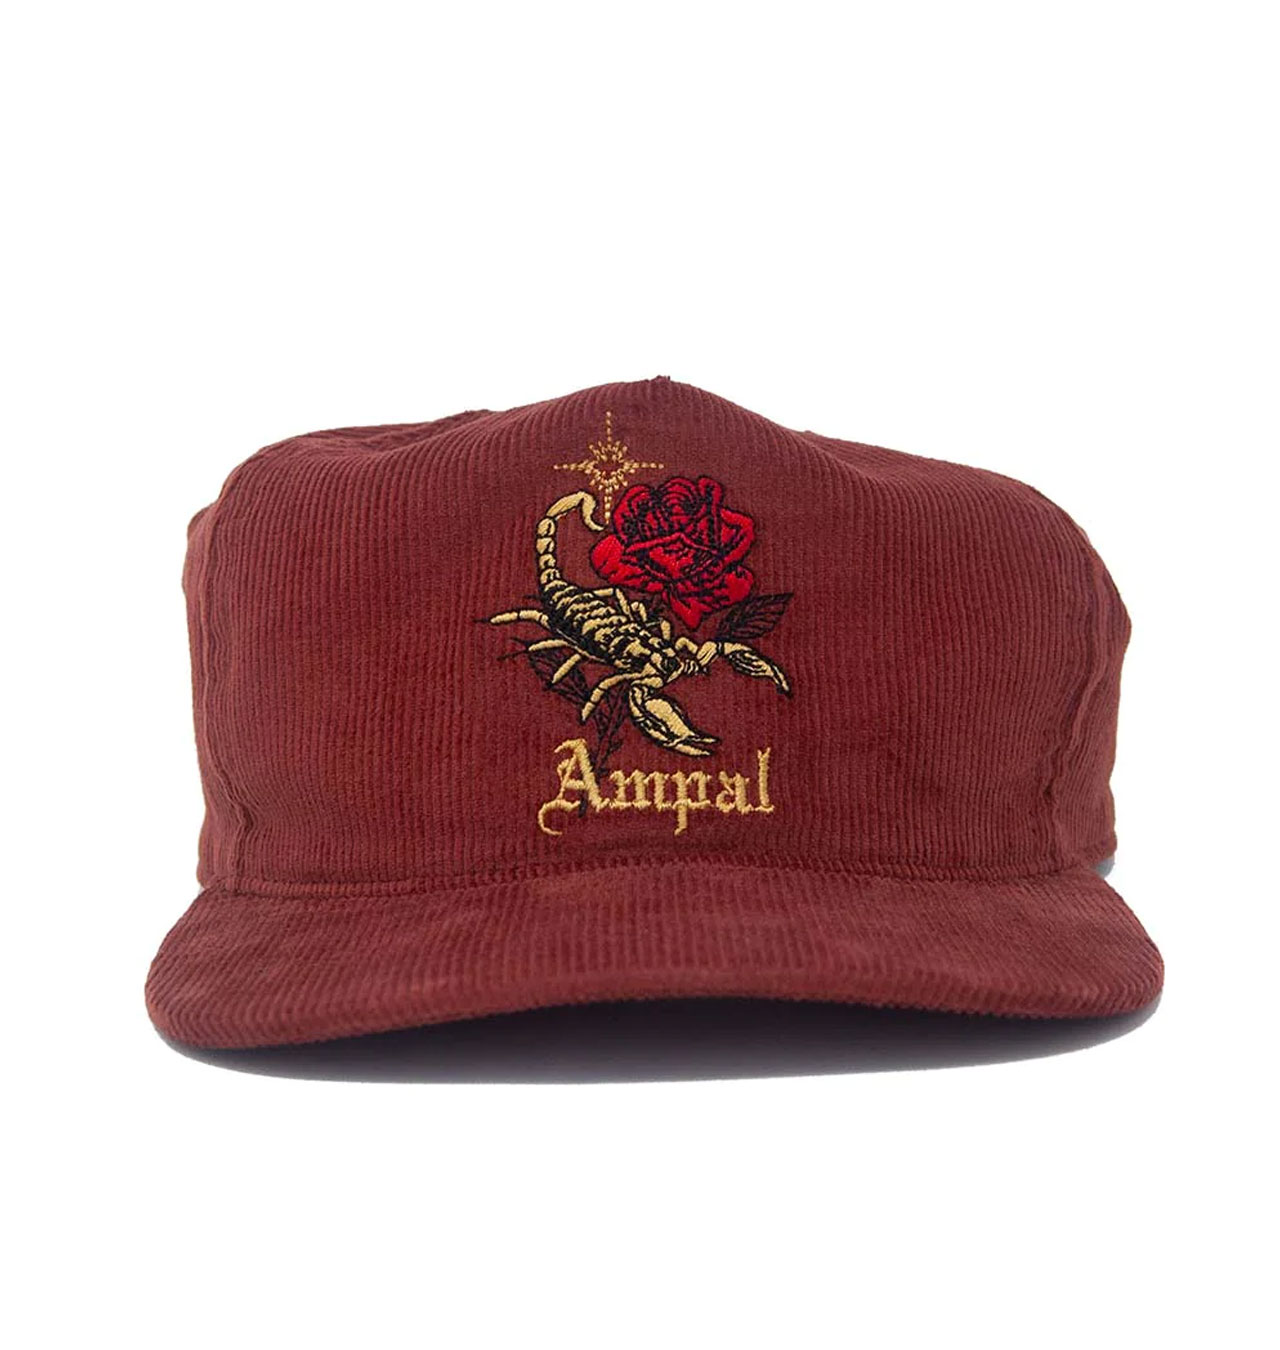 The Ampal Creative - Scorpio Cord Strapback Cap - Rust